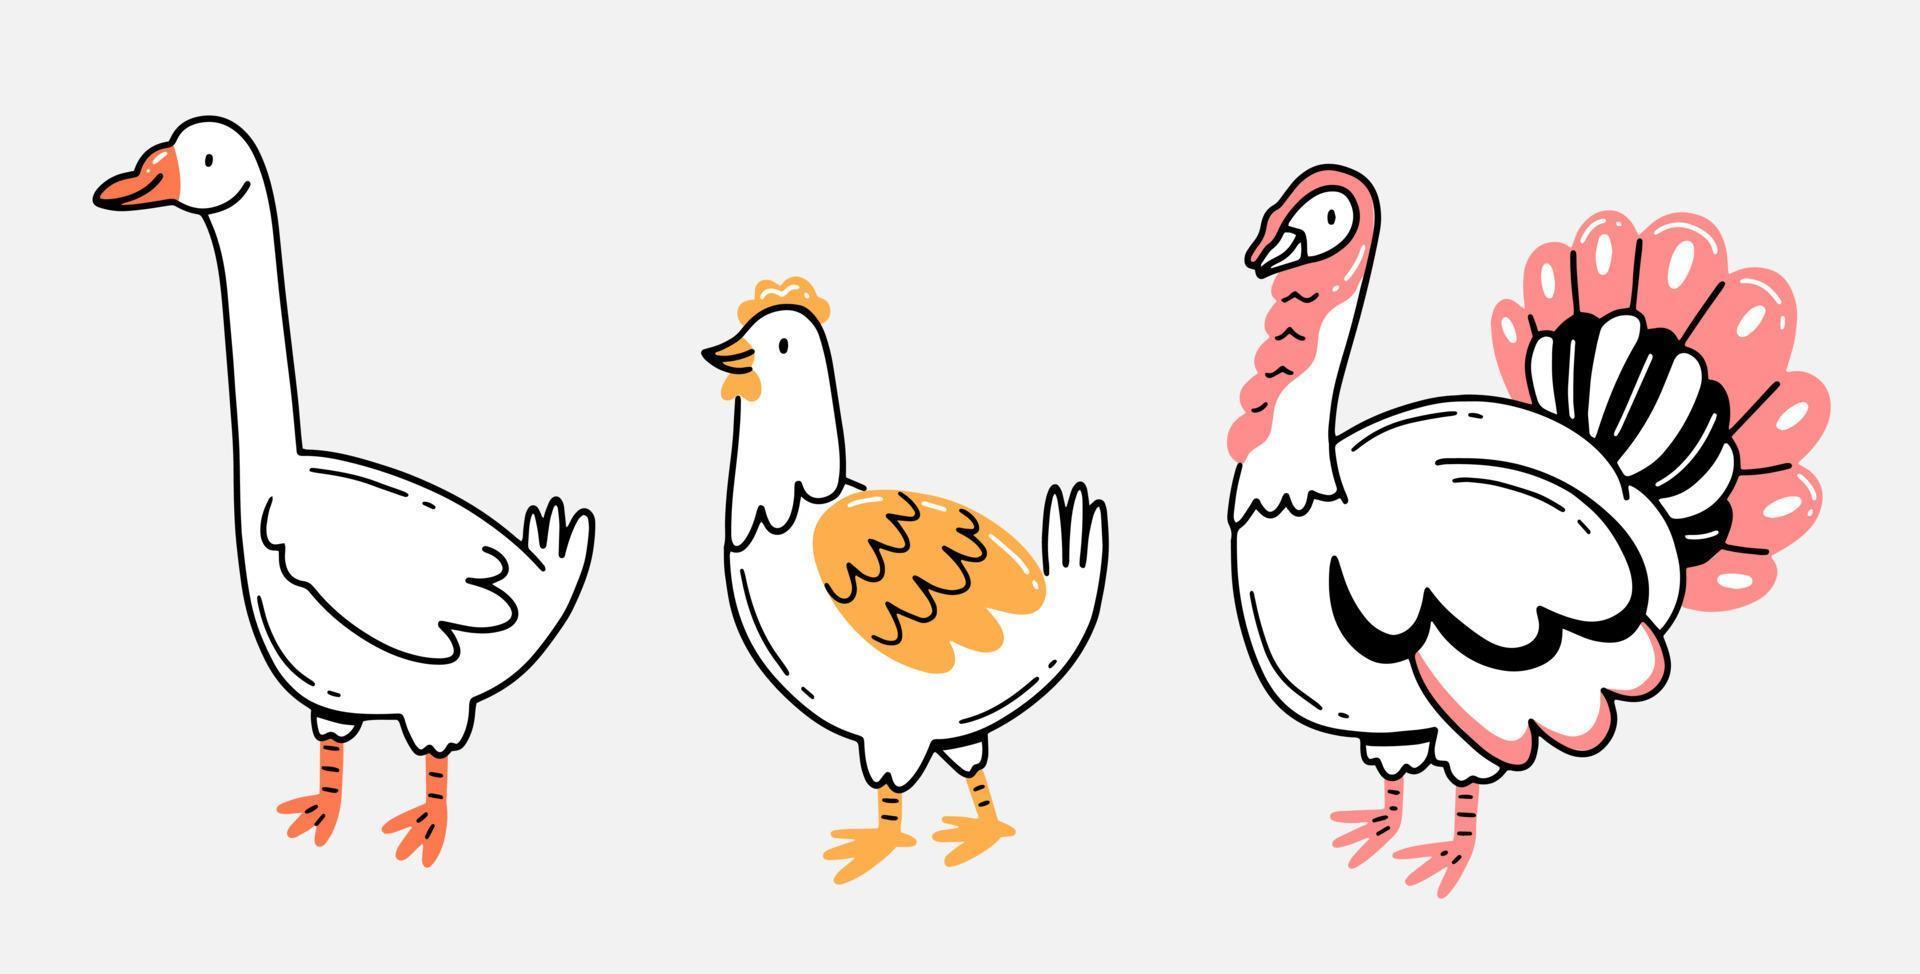 Gans, Huhn und Truthahn im linearen, handgezeichneten Doodle-Stil. Hausvögel im Cartoon-Stil. vektor isolierte tierillustration.